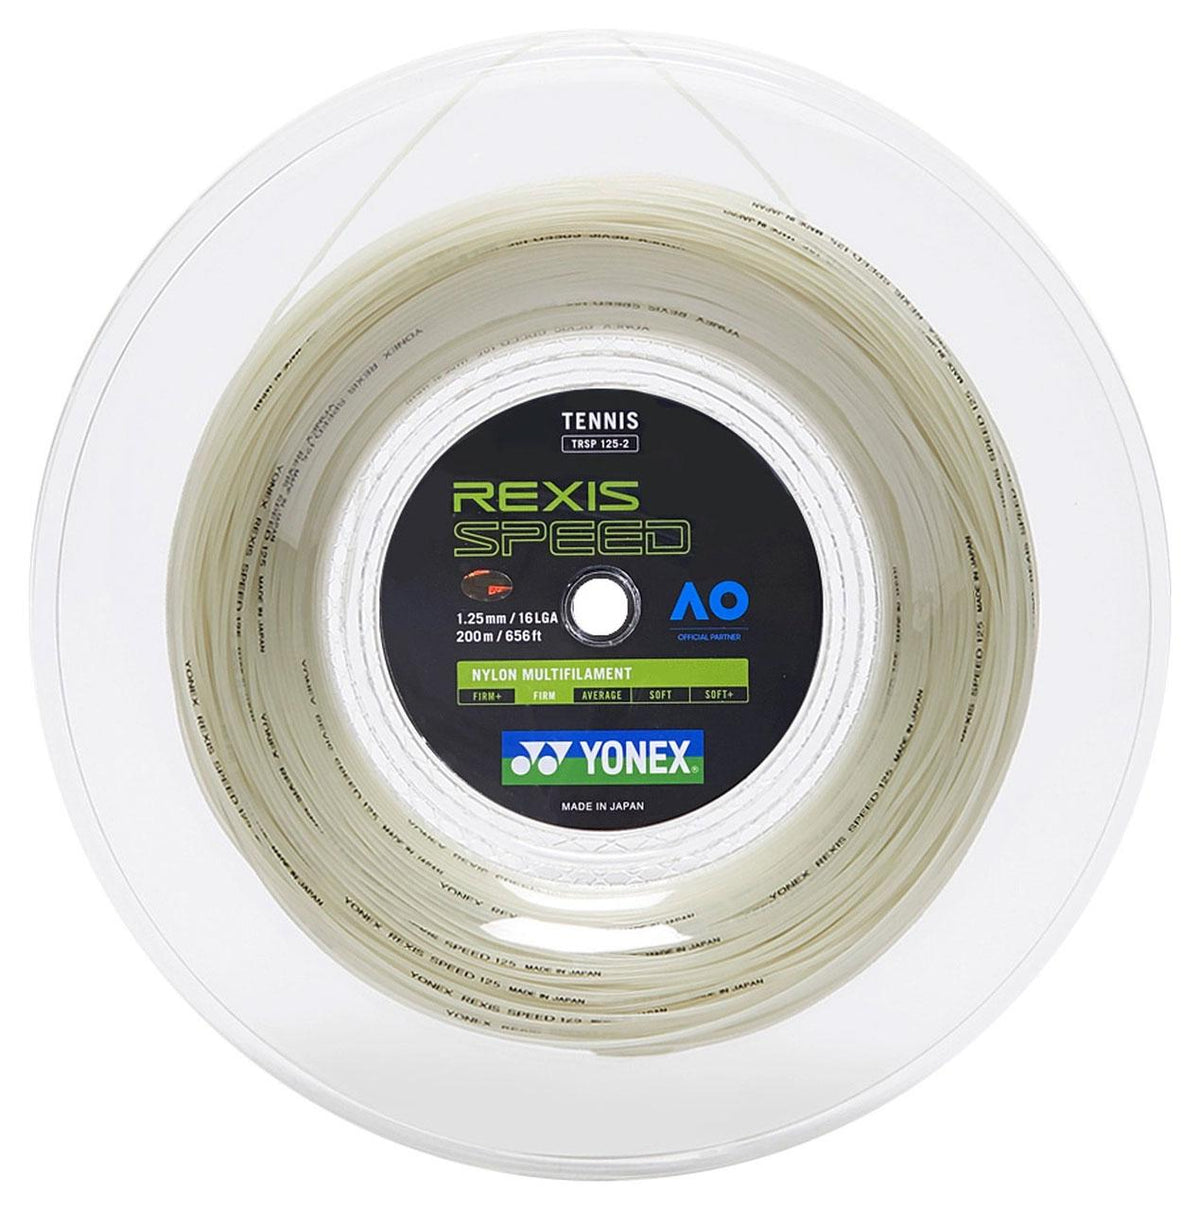 Yonex Rexis Speed 1.25mm 200m 网球线